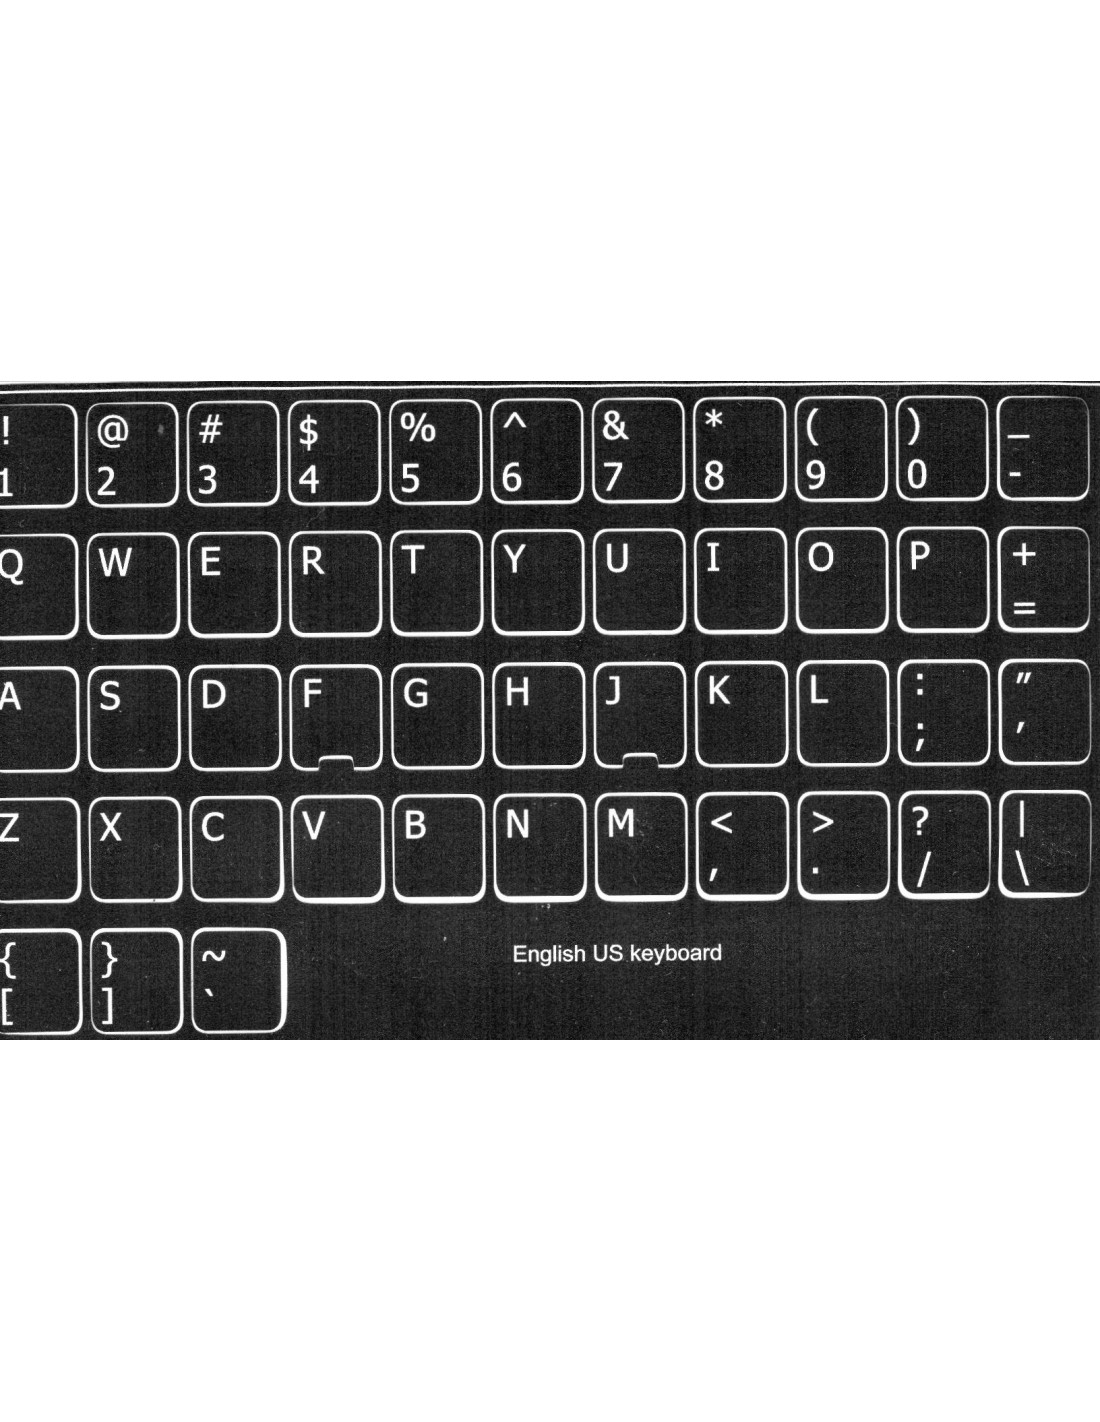 Adesivi tastiera USA fondo nero lettere bianche